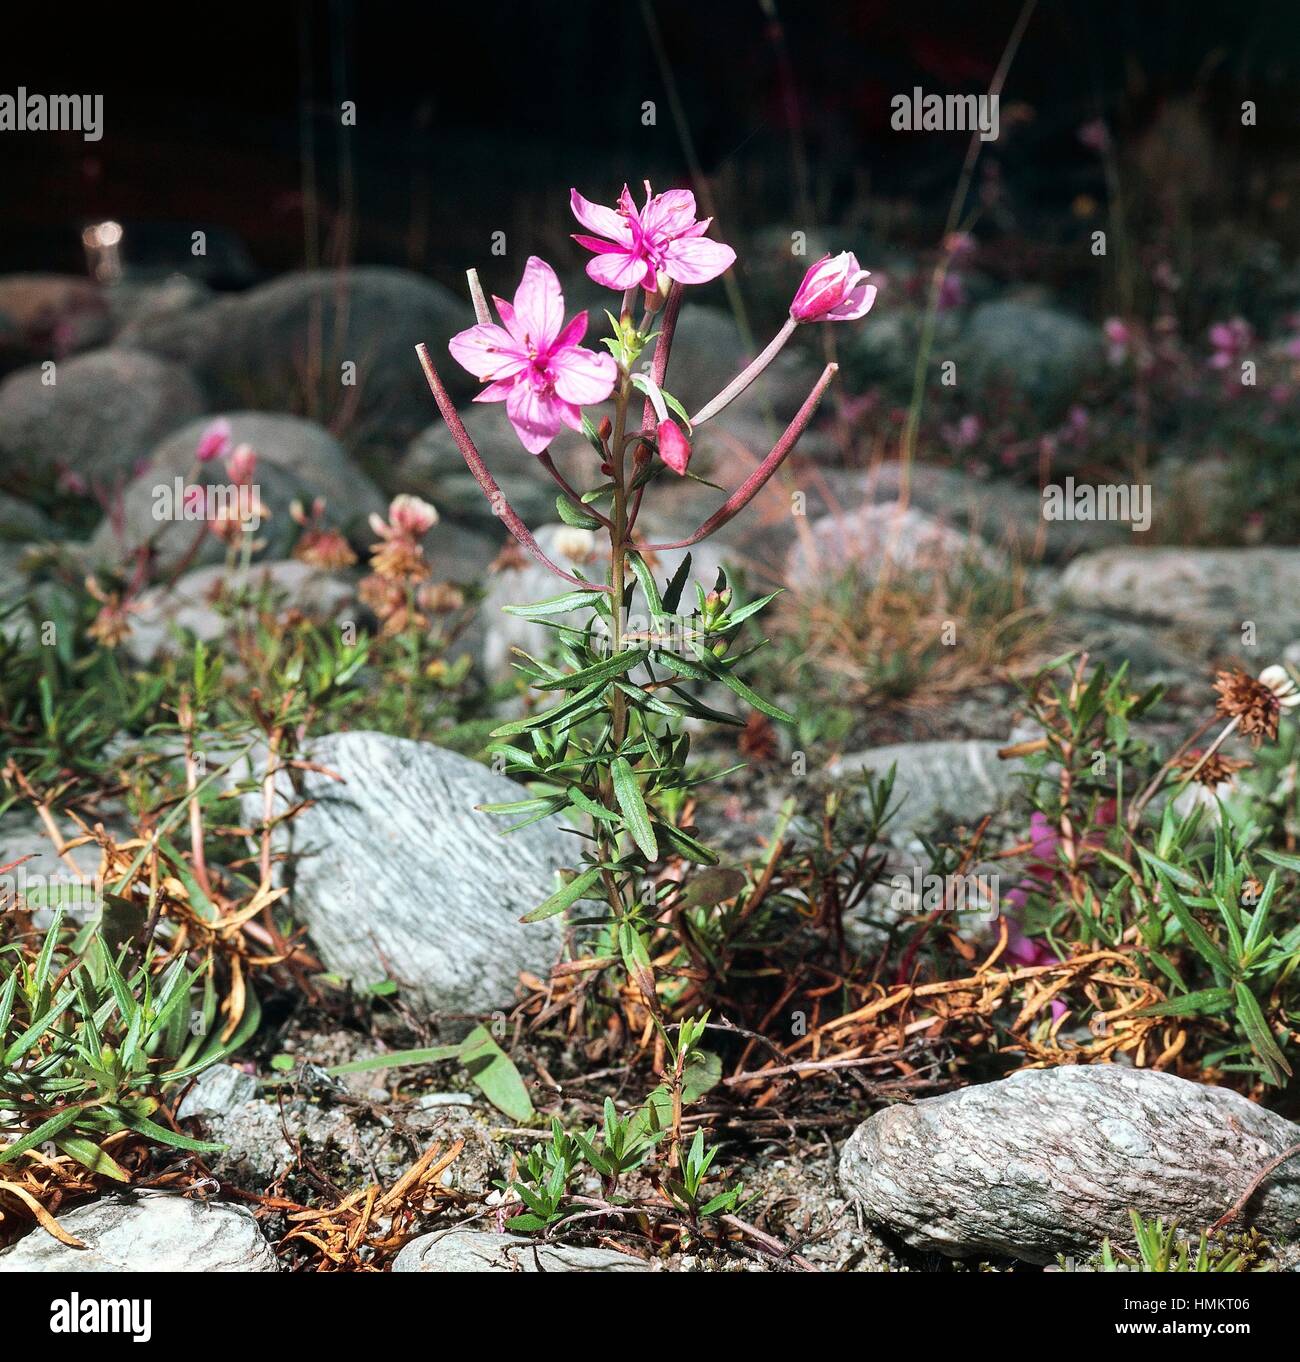 Alpine willowherb (Epilobium dodonaei rosmarinifolium), Onagraceae. Stock Photo